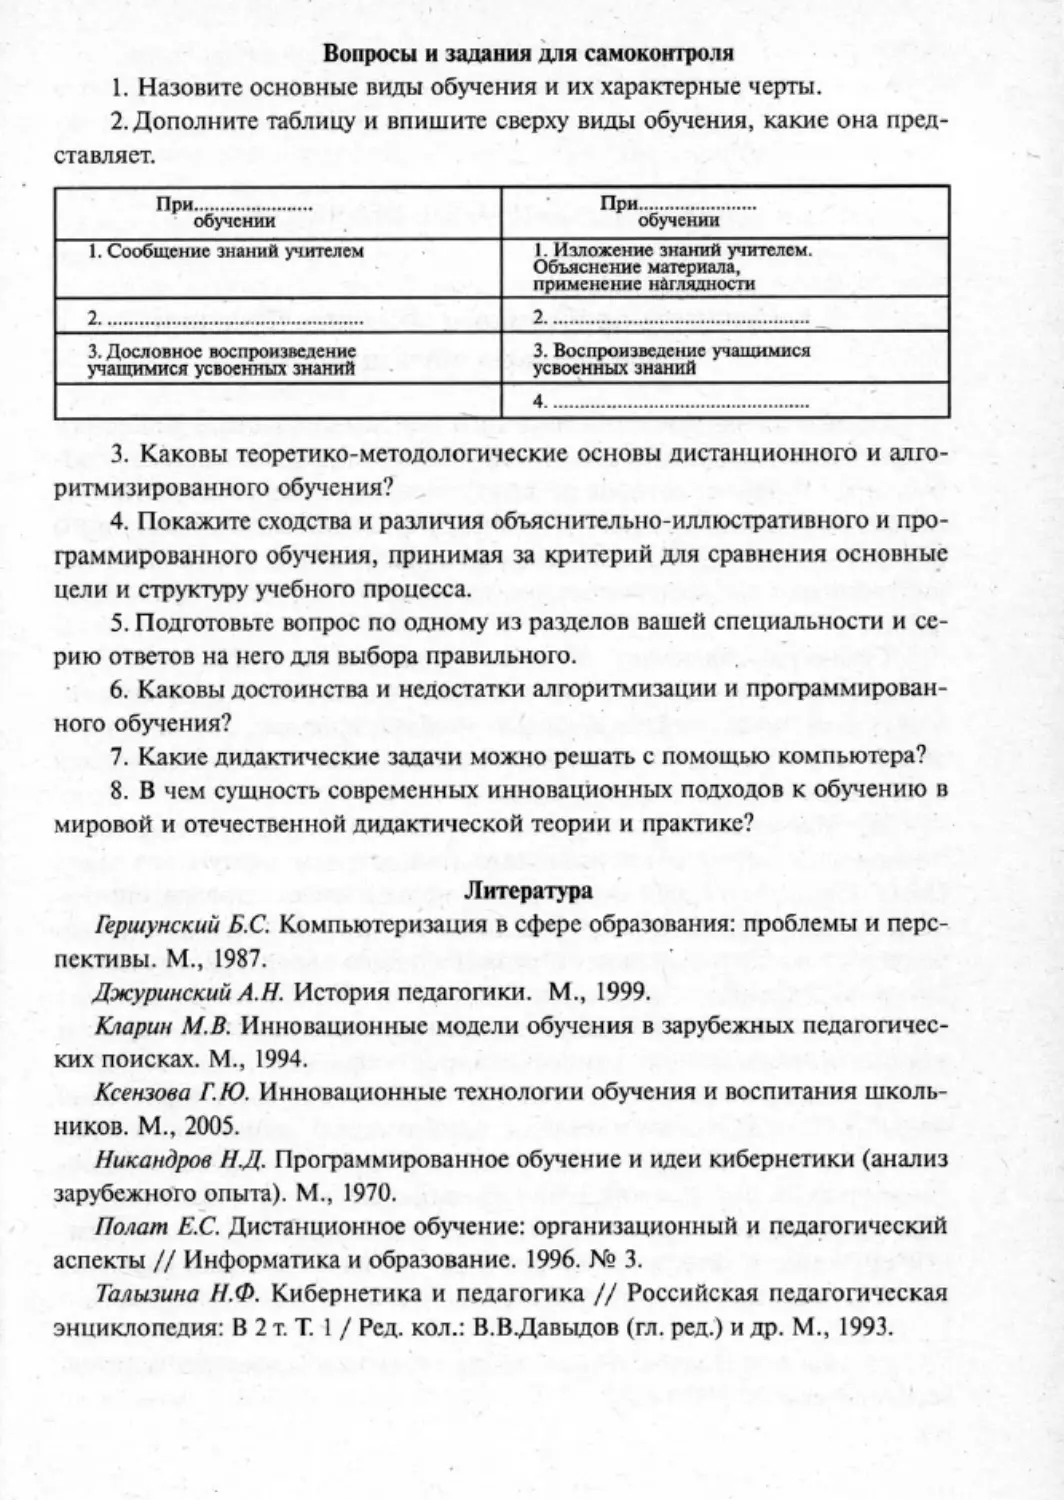 Загрекова Л.В., Николаева В.В - 0206